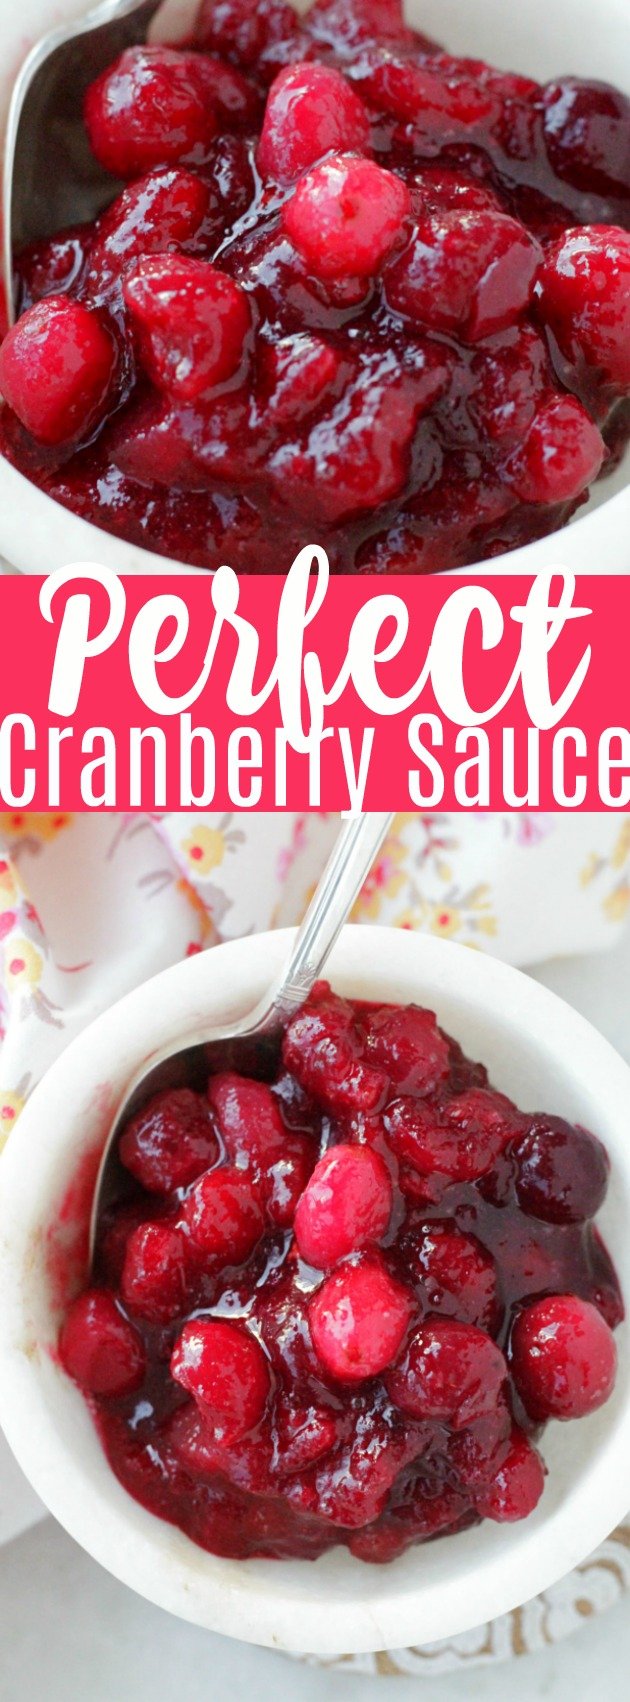 Perfect Cranberry Sauce | Foodtastic Mom #thanksgiving #thanksgivingrecipes #cranberryrecipes #cranberrysauce #perfectcranberrysauce via @foodtasticmom